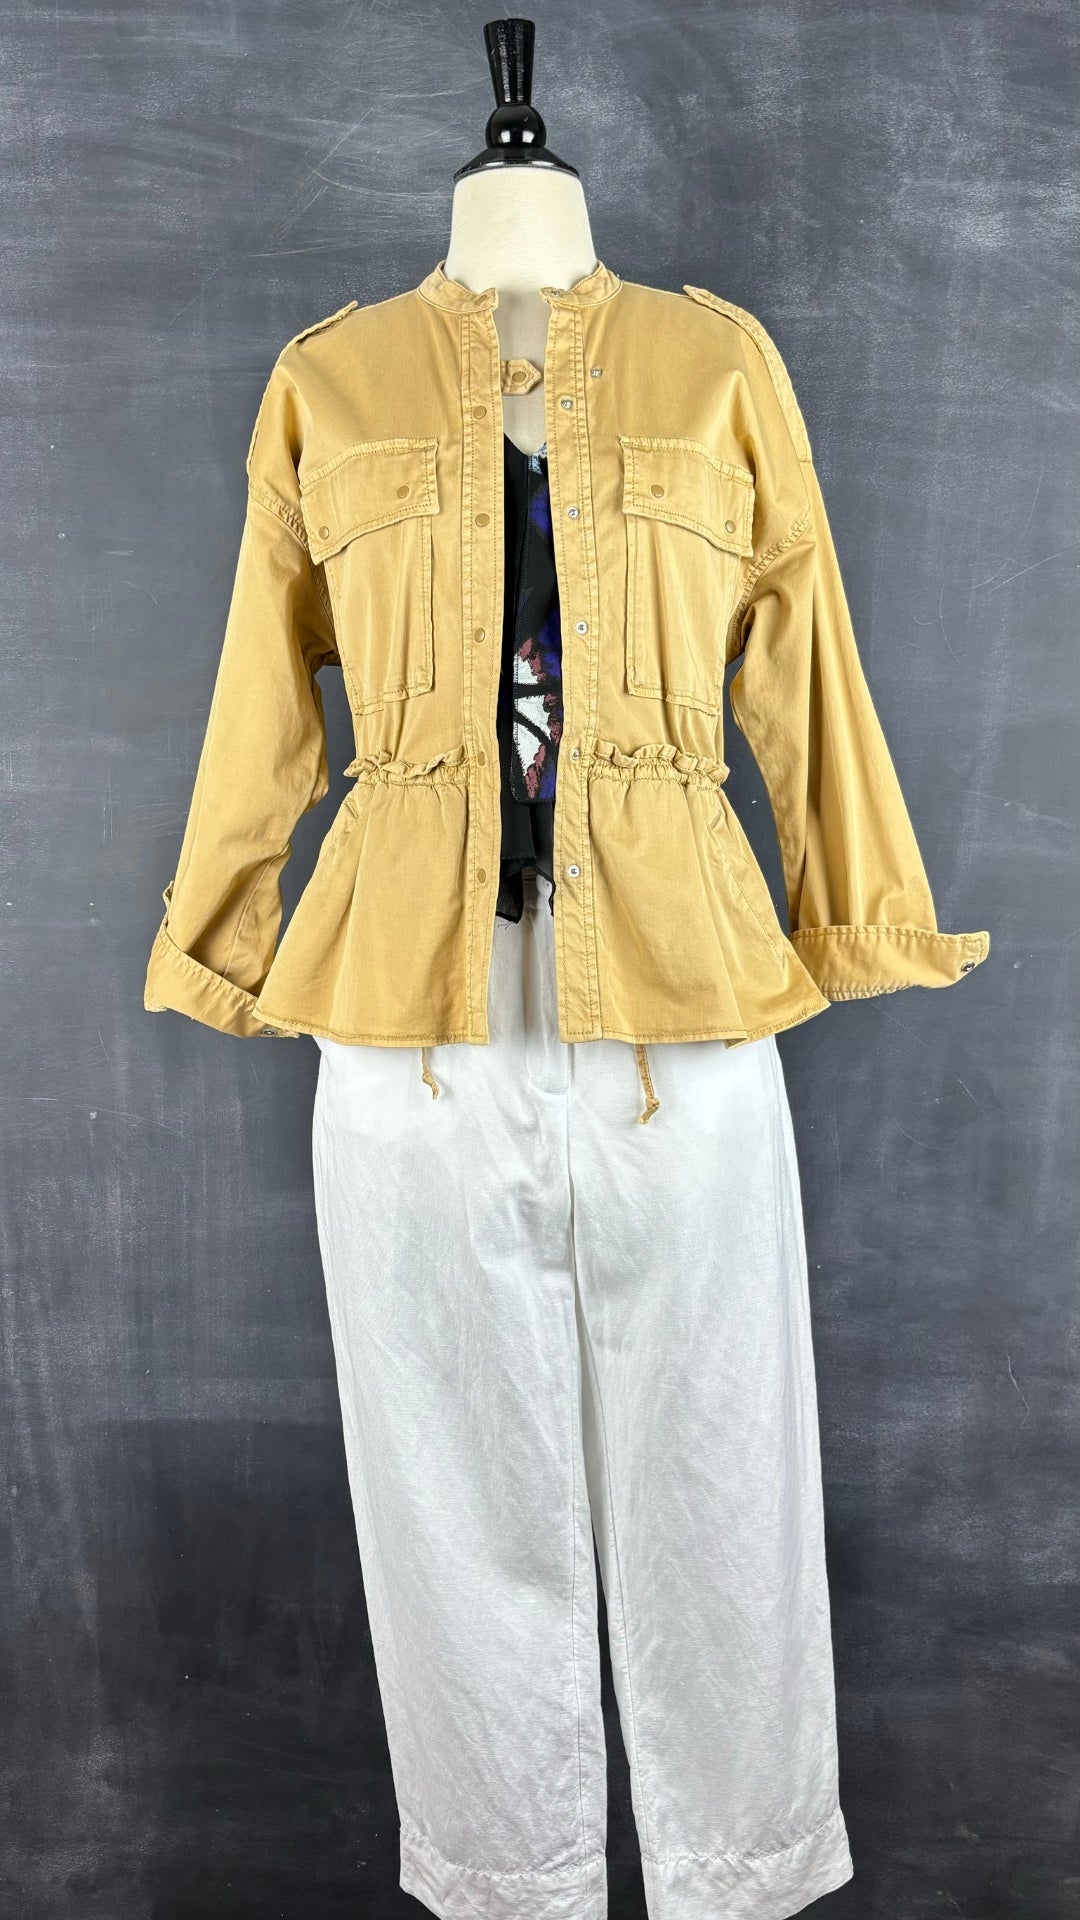 Camisole fluide étagée colorée Desigual, taille small. Vue de l'agencement avec le pantalon en mélange de lin blanc et la veste tan Joie. 